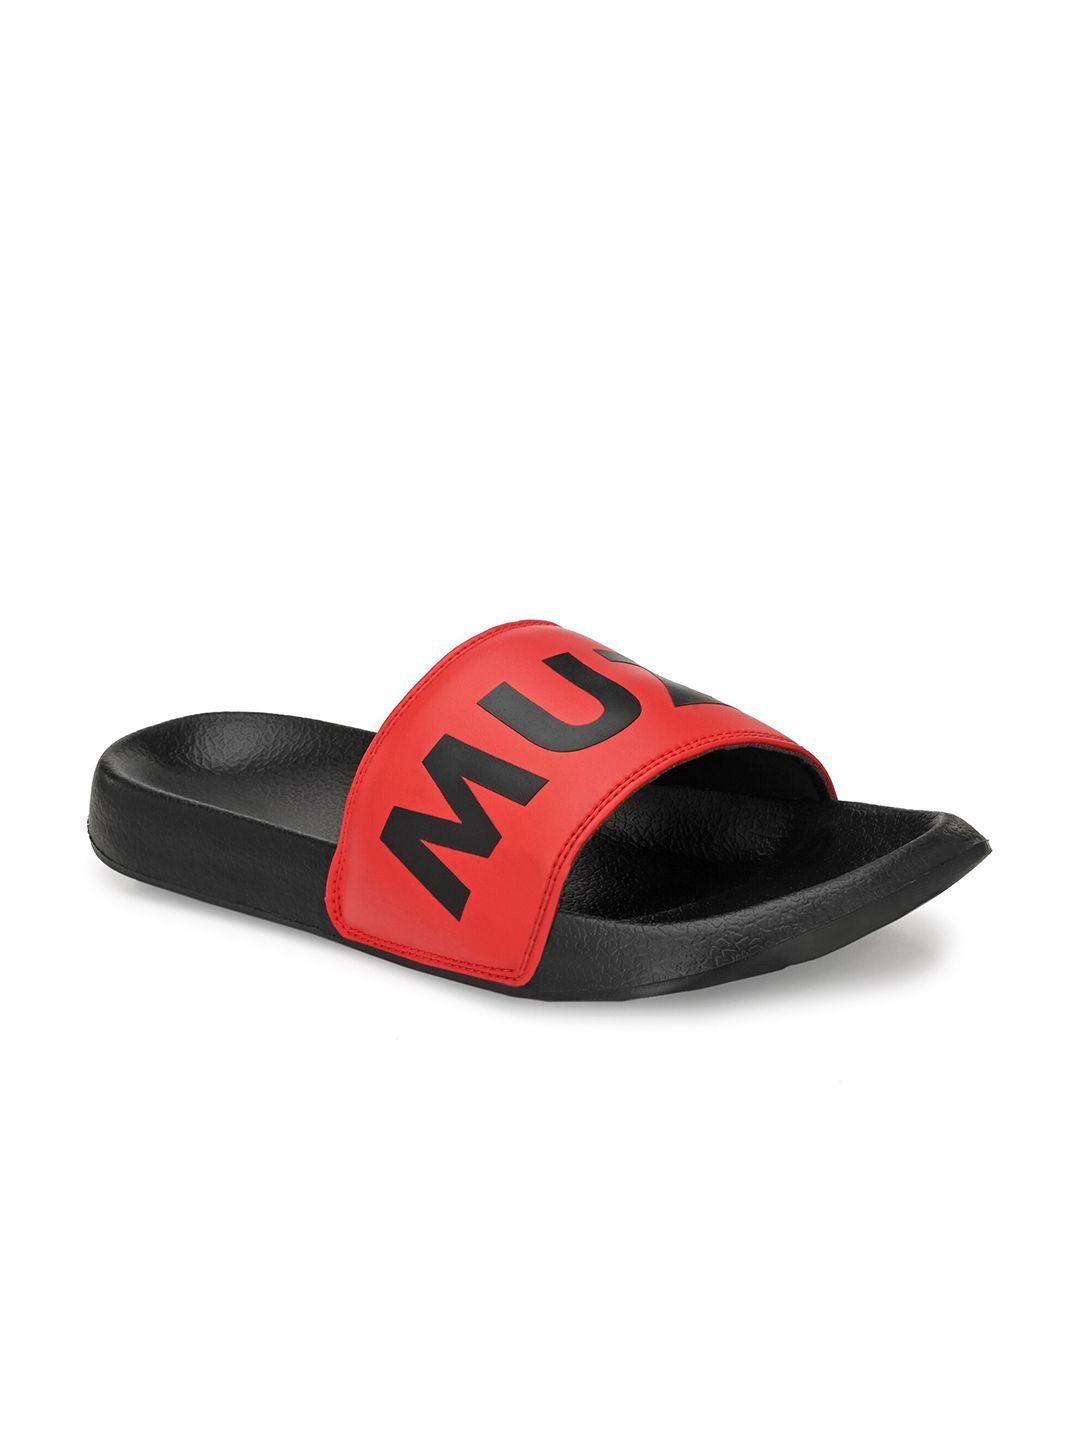 muzzati men red & black printed flip flop